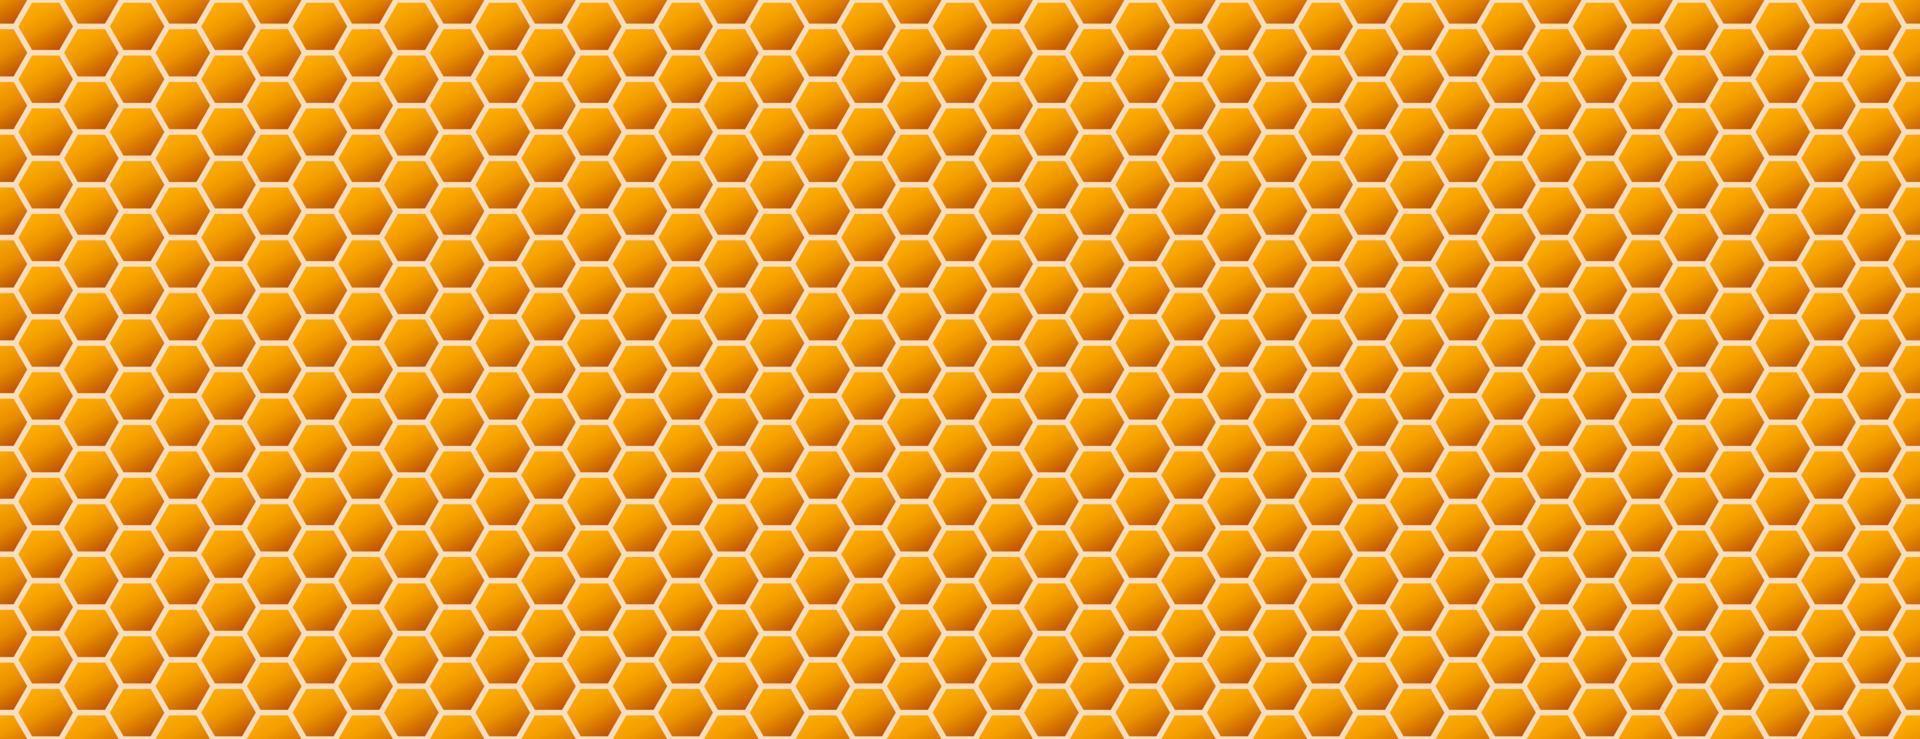 Favo sfondo. alveare senza soluzione di continuità modello. vettore illustrazione di piatto geometrico struttura simbolo. esagono, esagonale raster, cartello o mosaico cellula icona. miele ape alveare, d'oro arancia giallo.